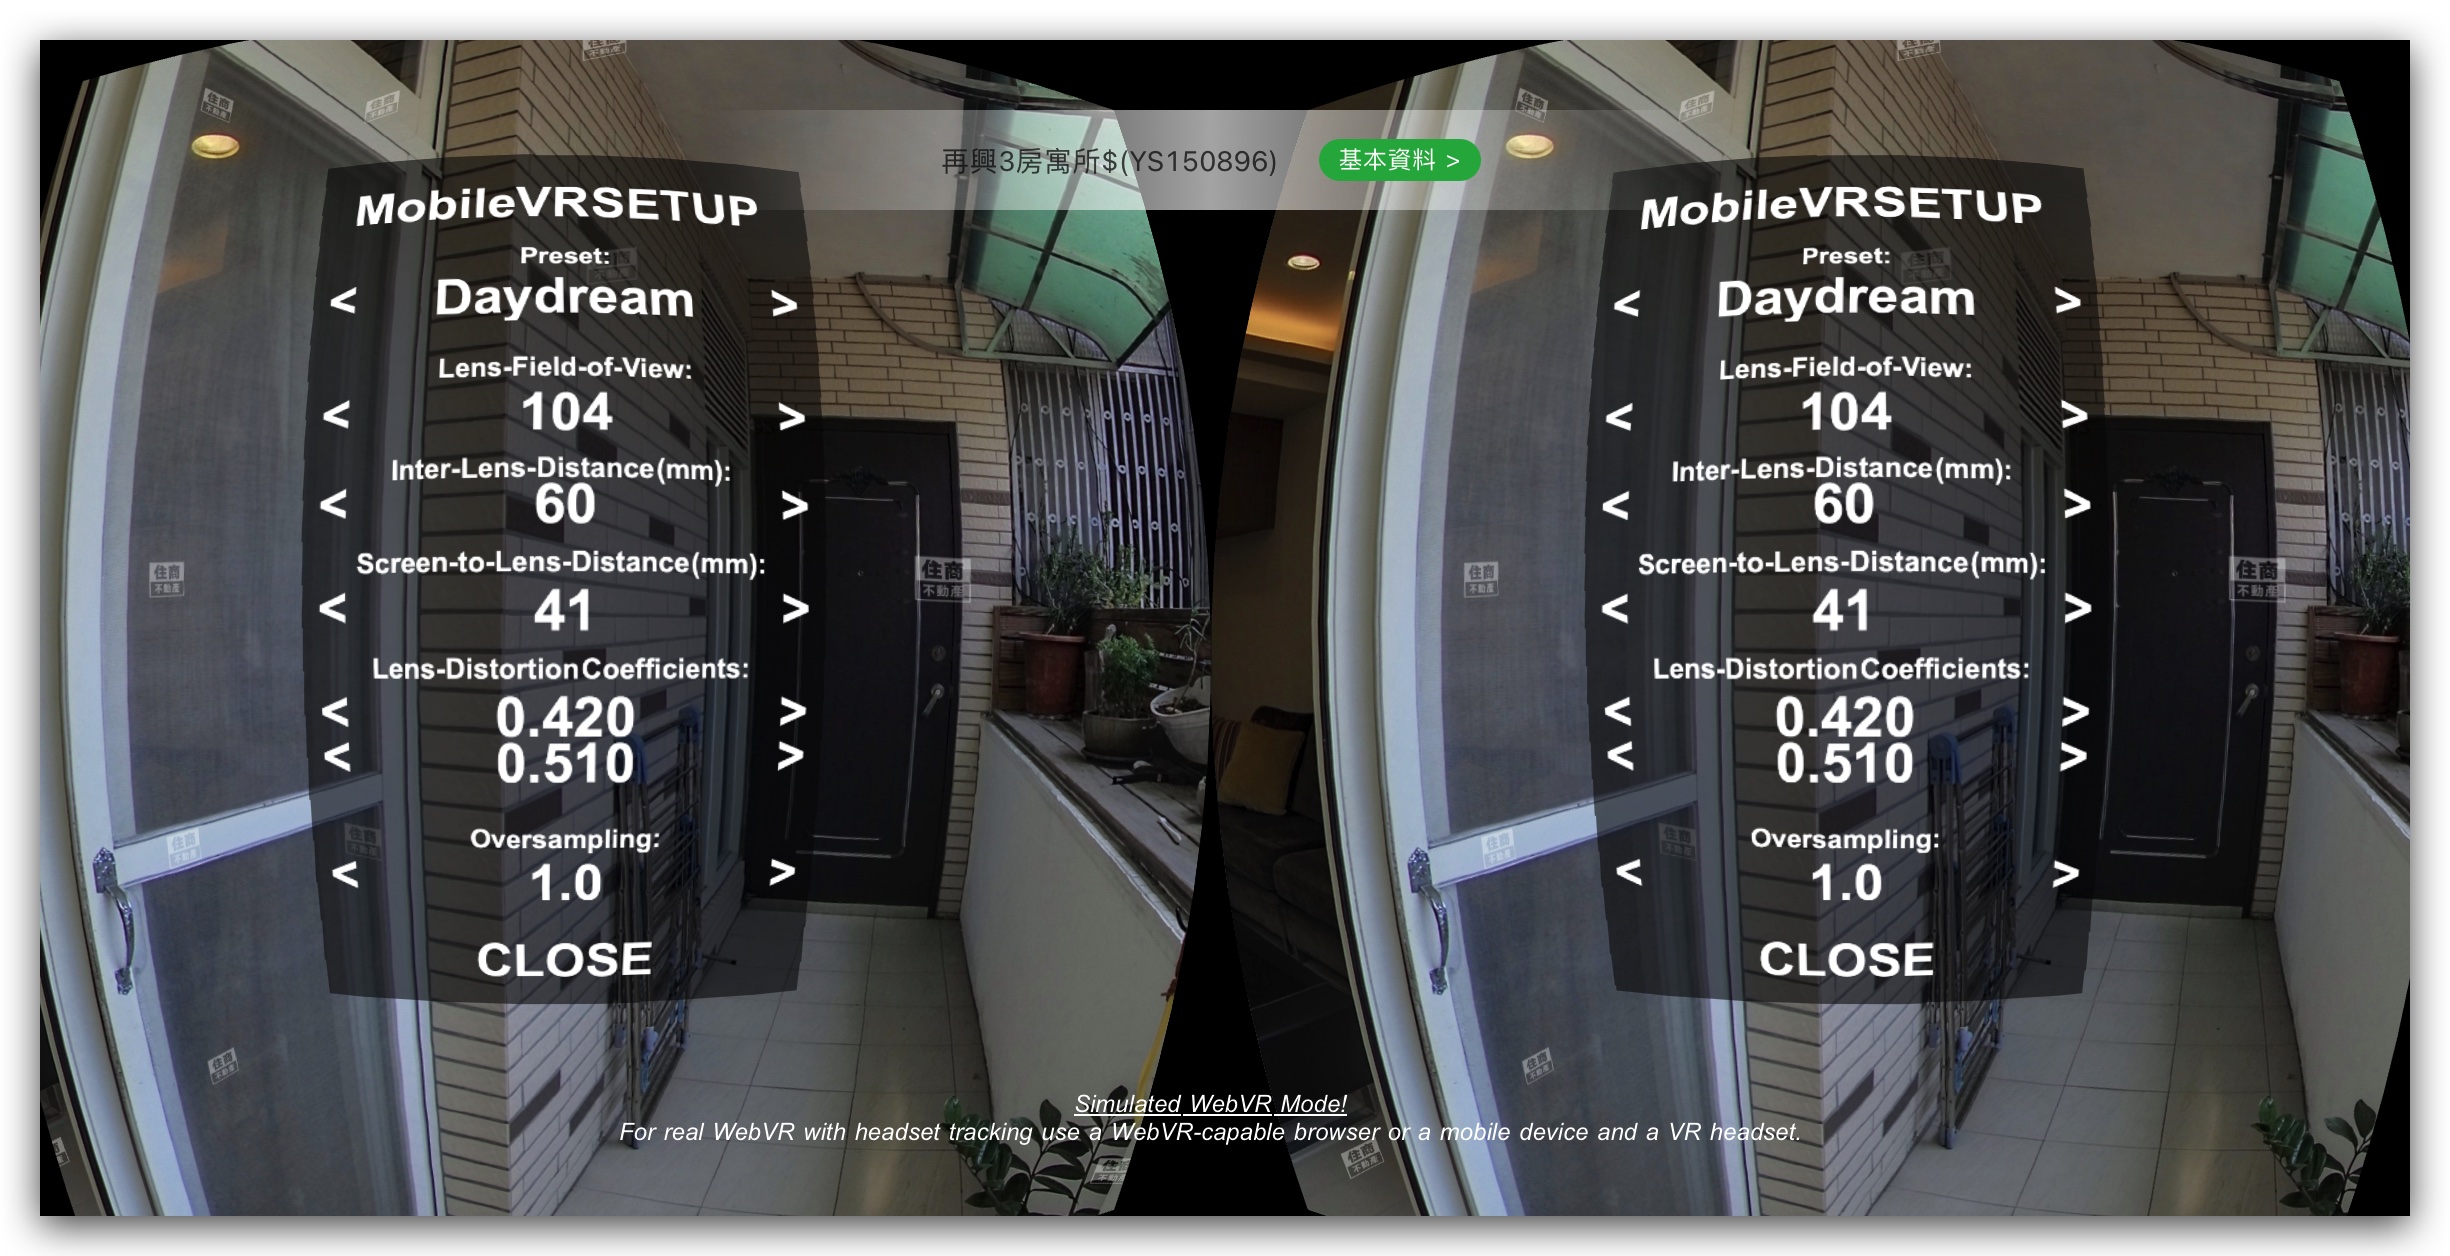 VR 線上上屋 線上看屋 住商不動產 虛擬實境看屋